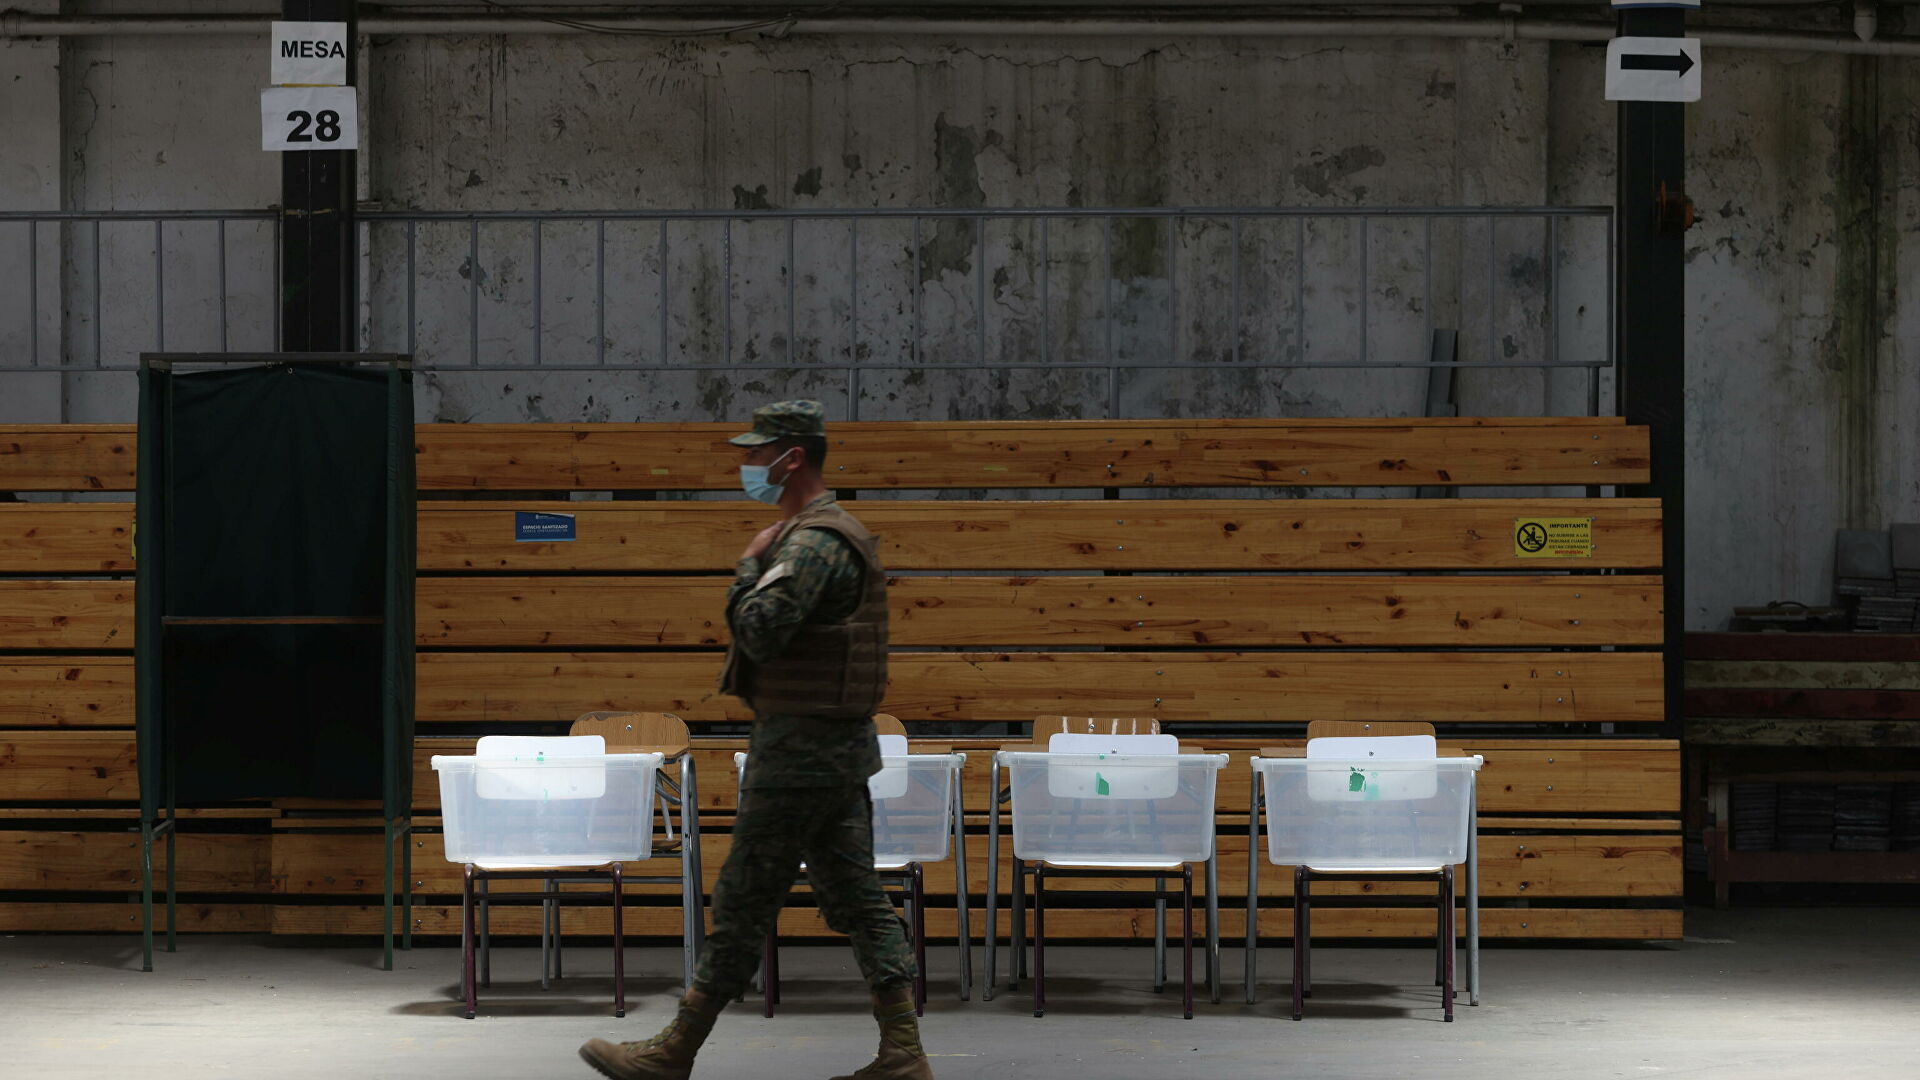  Las elecciones presidenciales de Chile en cifras: 15 millones de electores y 7 candidatos | Fotos